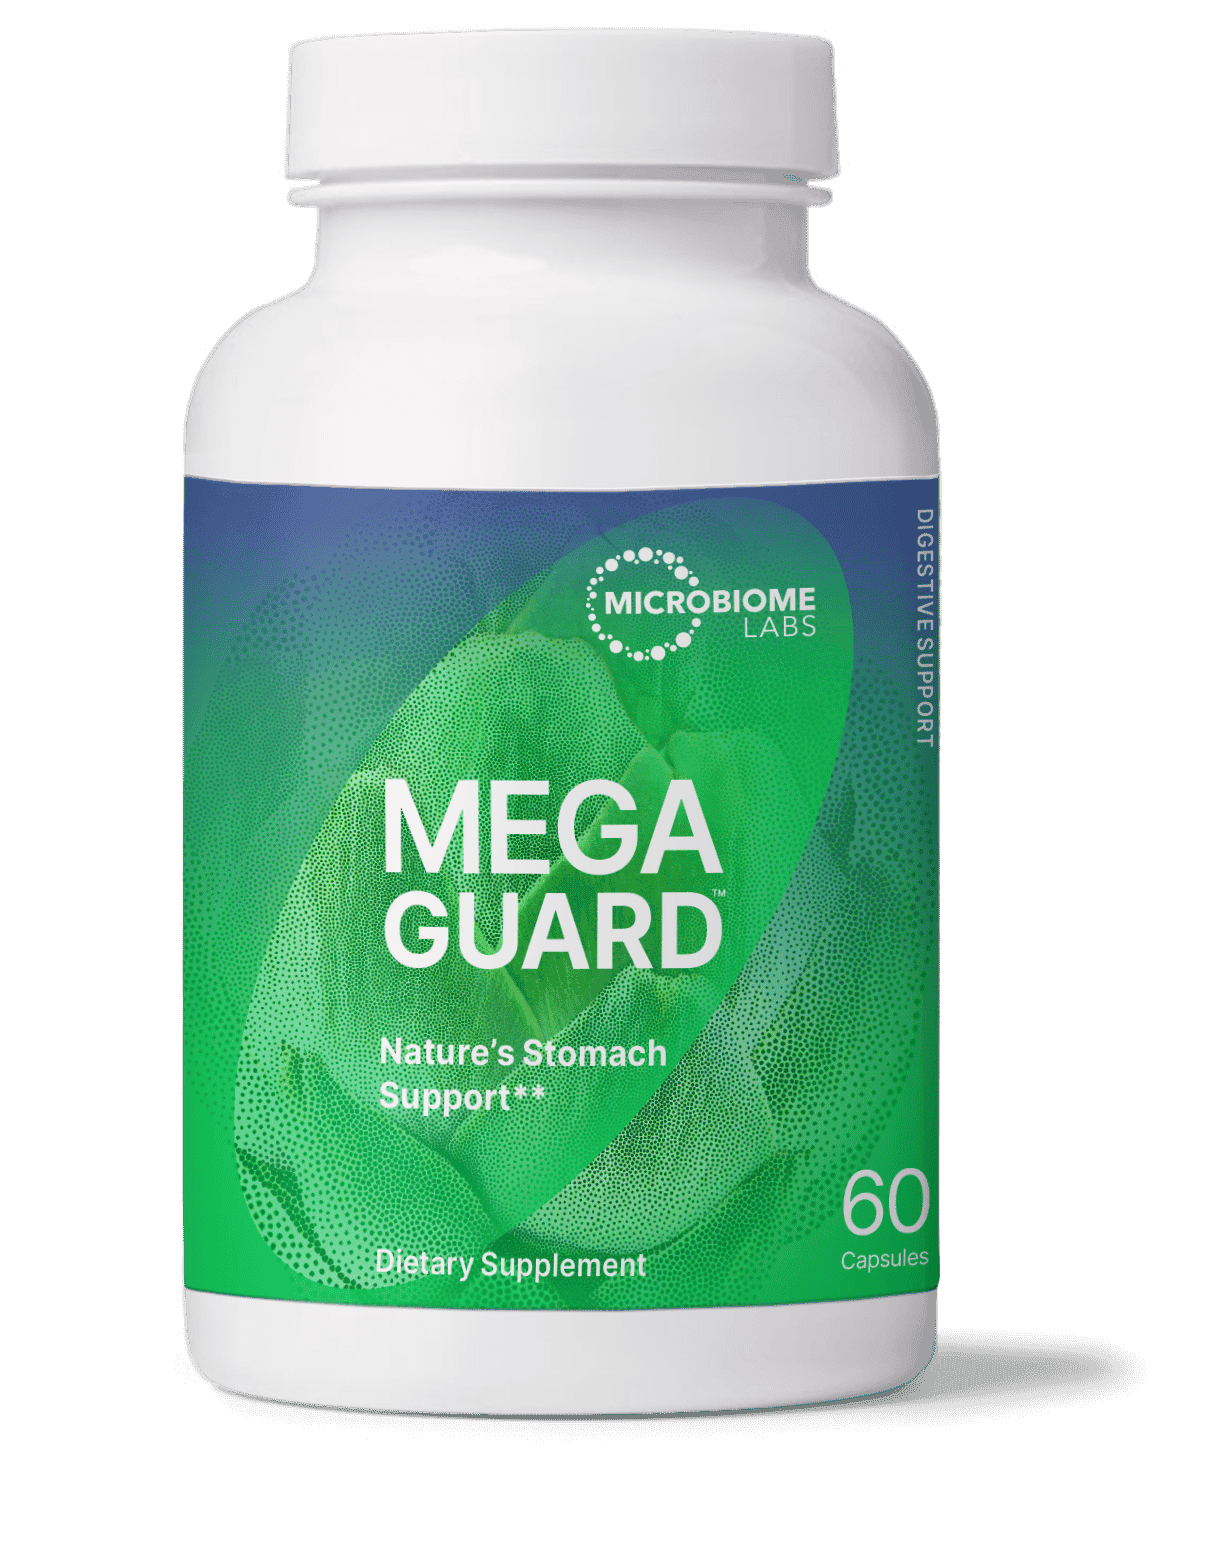 Пробиотик MegaGuard (Мега страж) от microbiomelabs